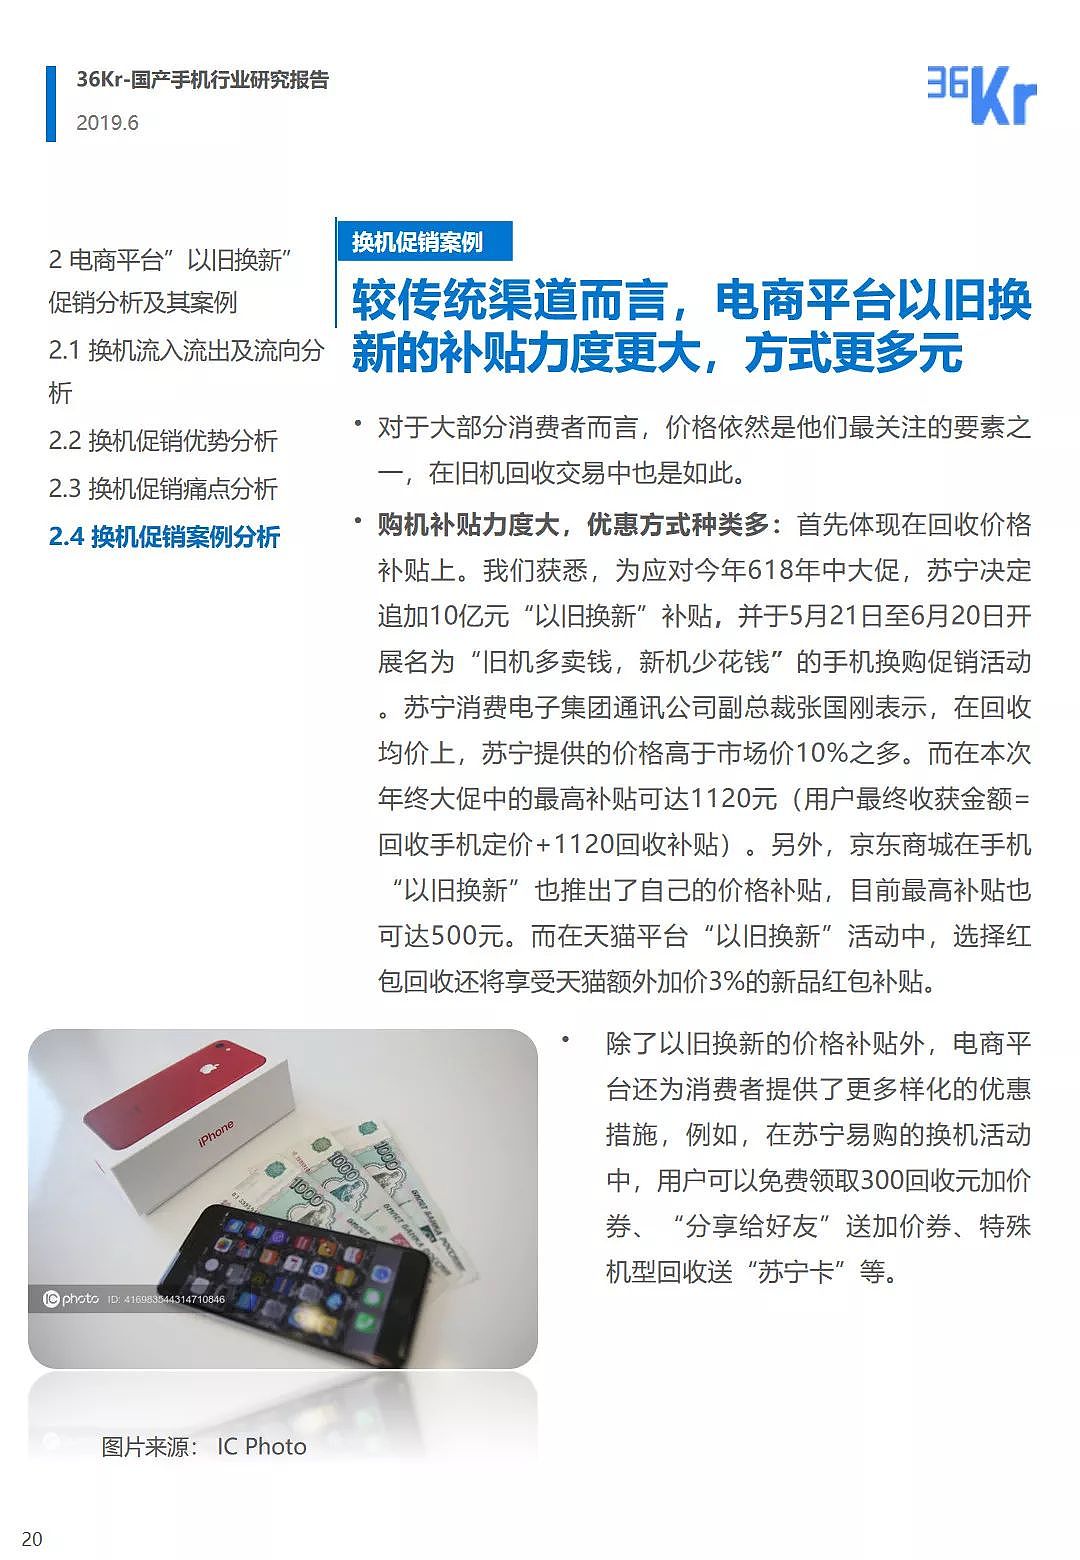 中国手机品牌市场营销研究报告 | 36氪研究 - 21